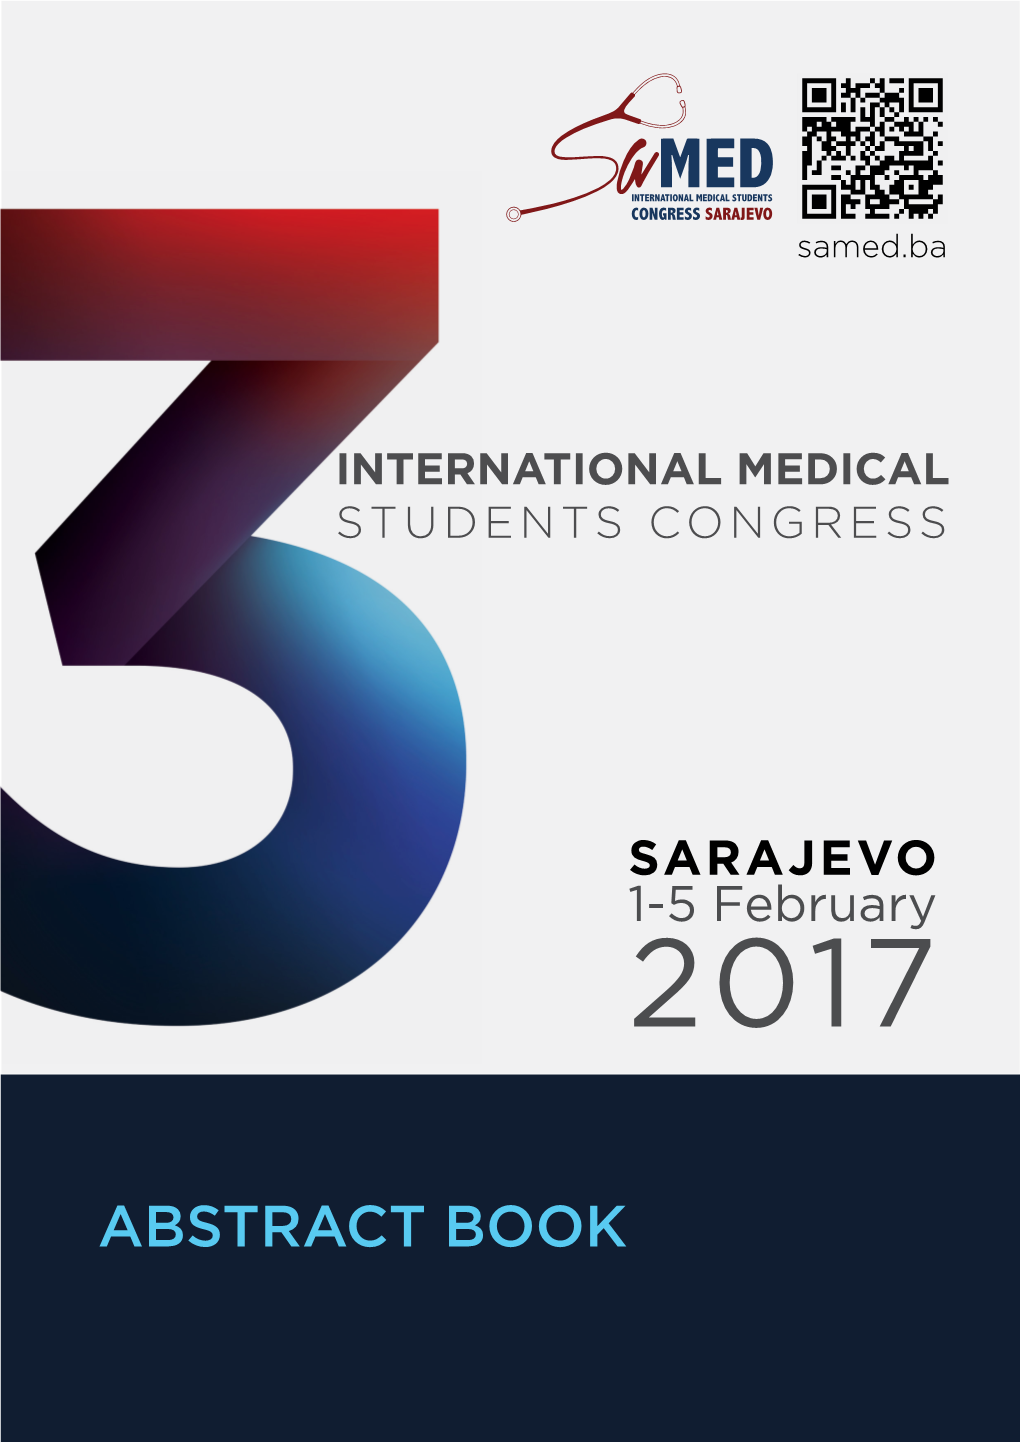 ABSTRACT BOOK Samed 2017 | 3Rd International Medical Students Congress Sarajevo Congress Medical Students International | 3Rd Samed 2017